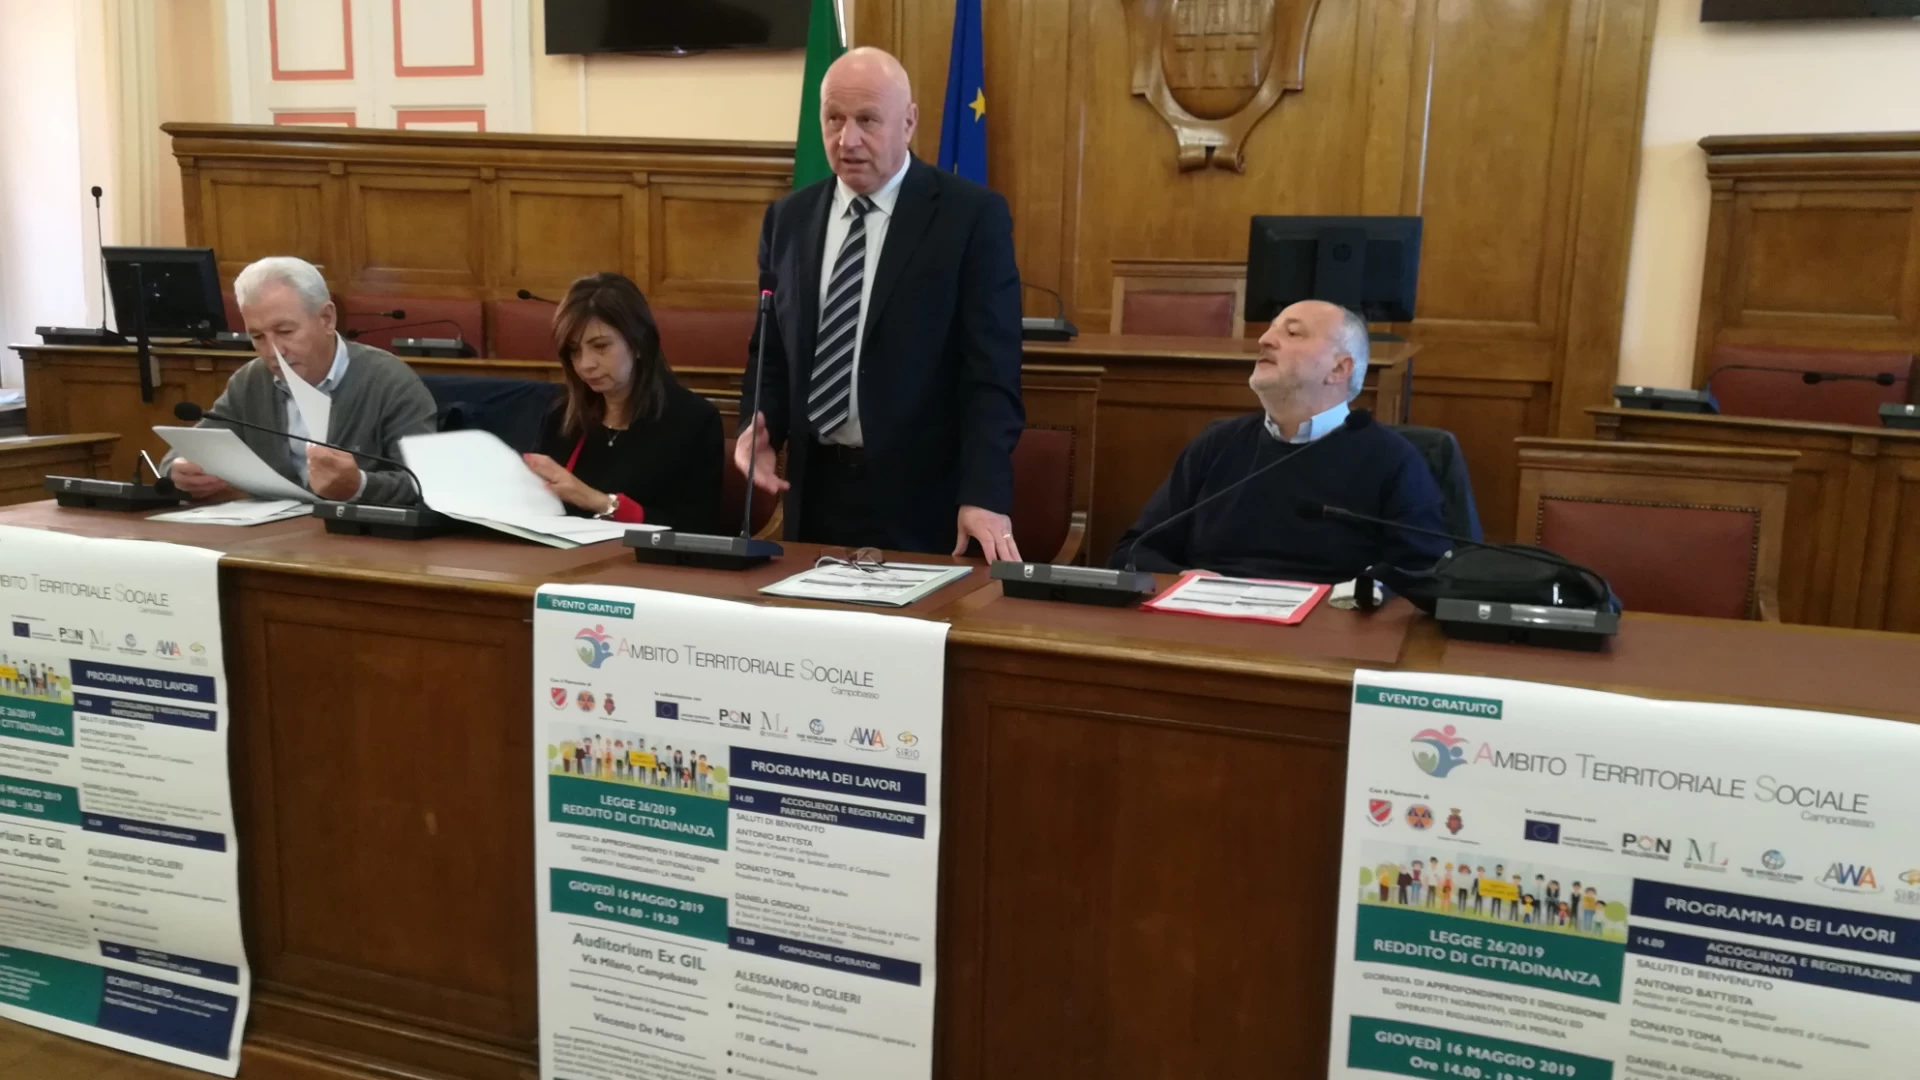 Campobasso: il 16 maggio l’approfondimento sul reddito di cittadinanza. Il sindaco Battista: “Preparare gli operatori ed informare i cittadini”.